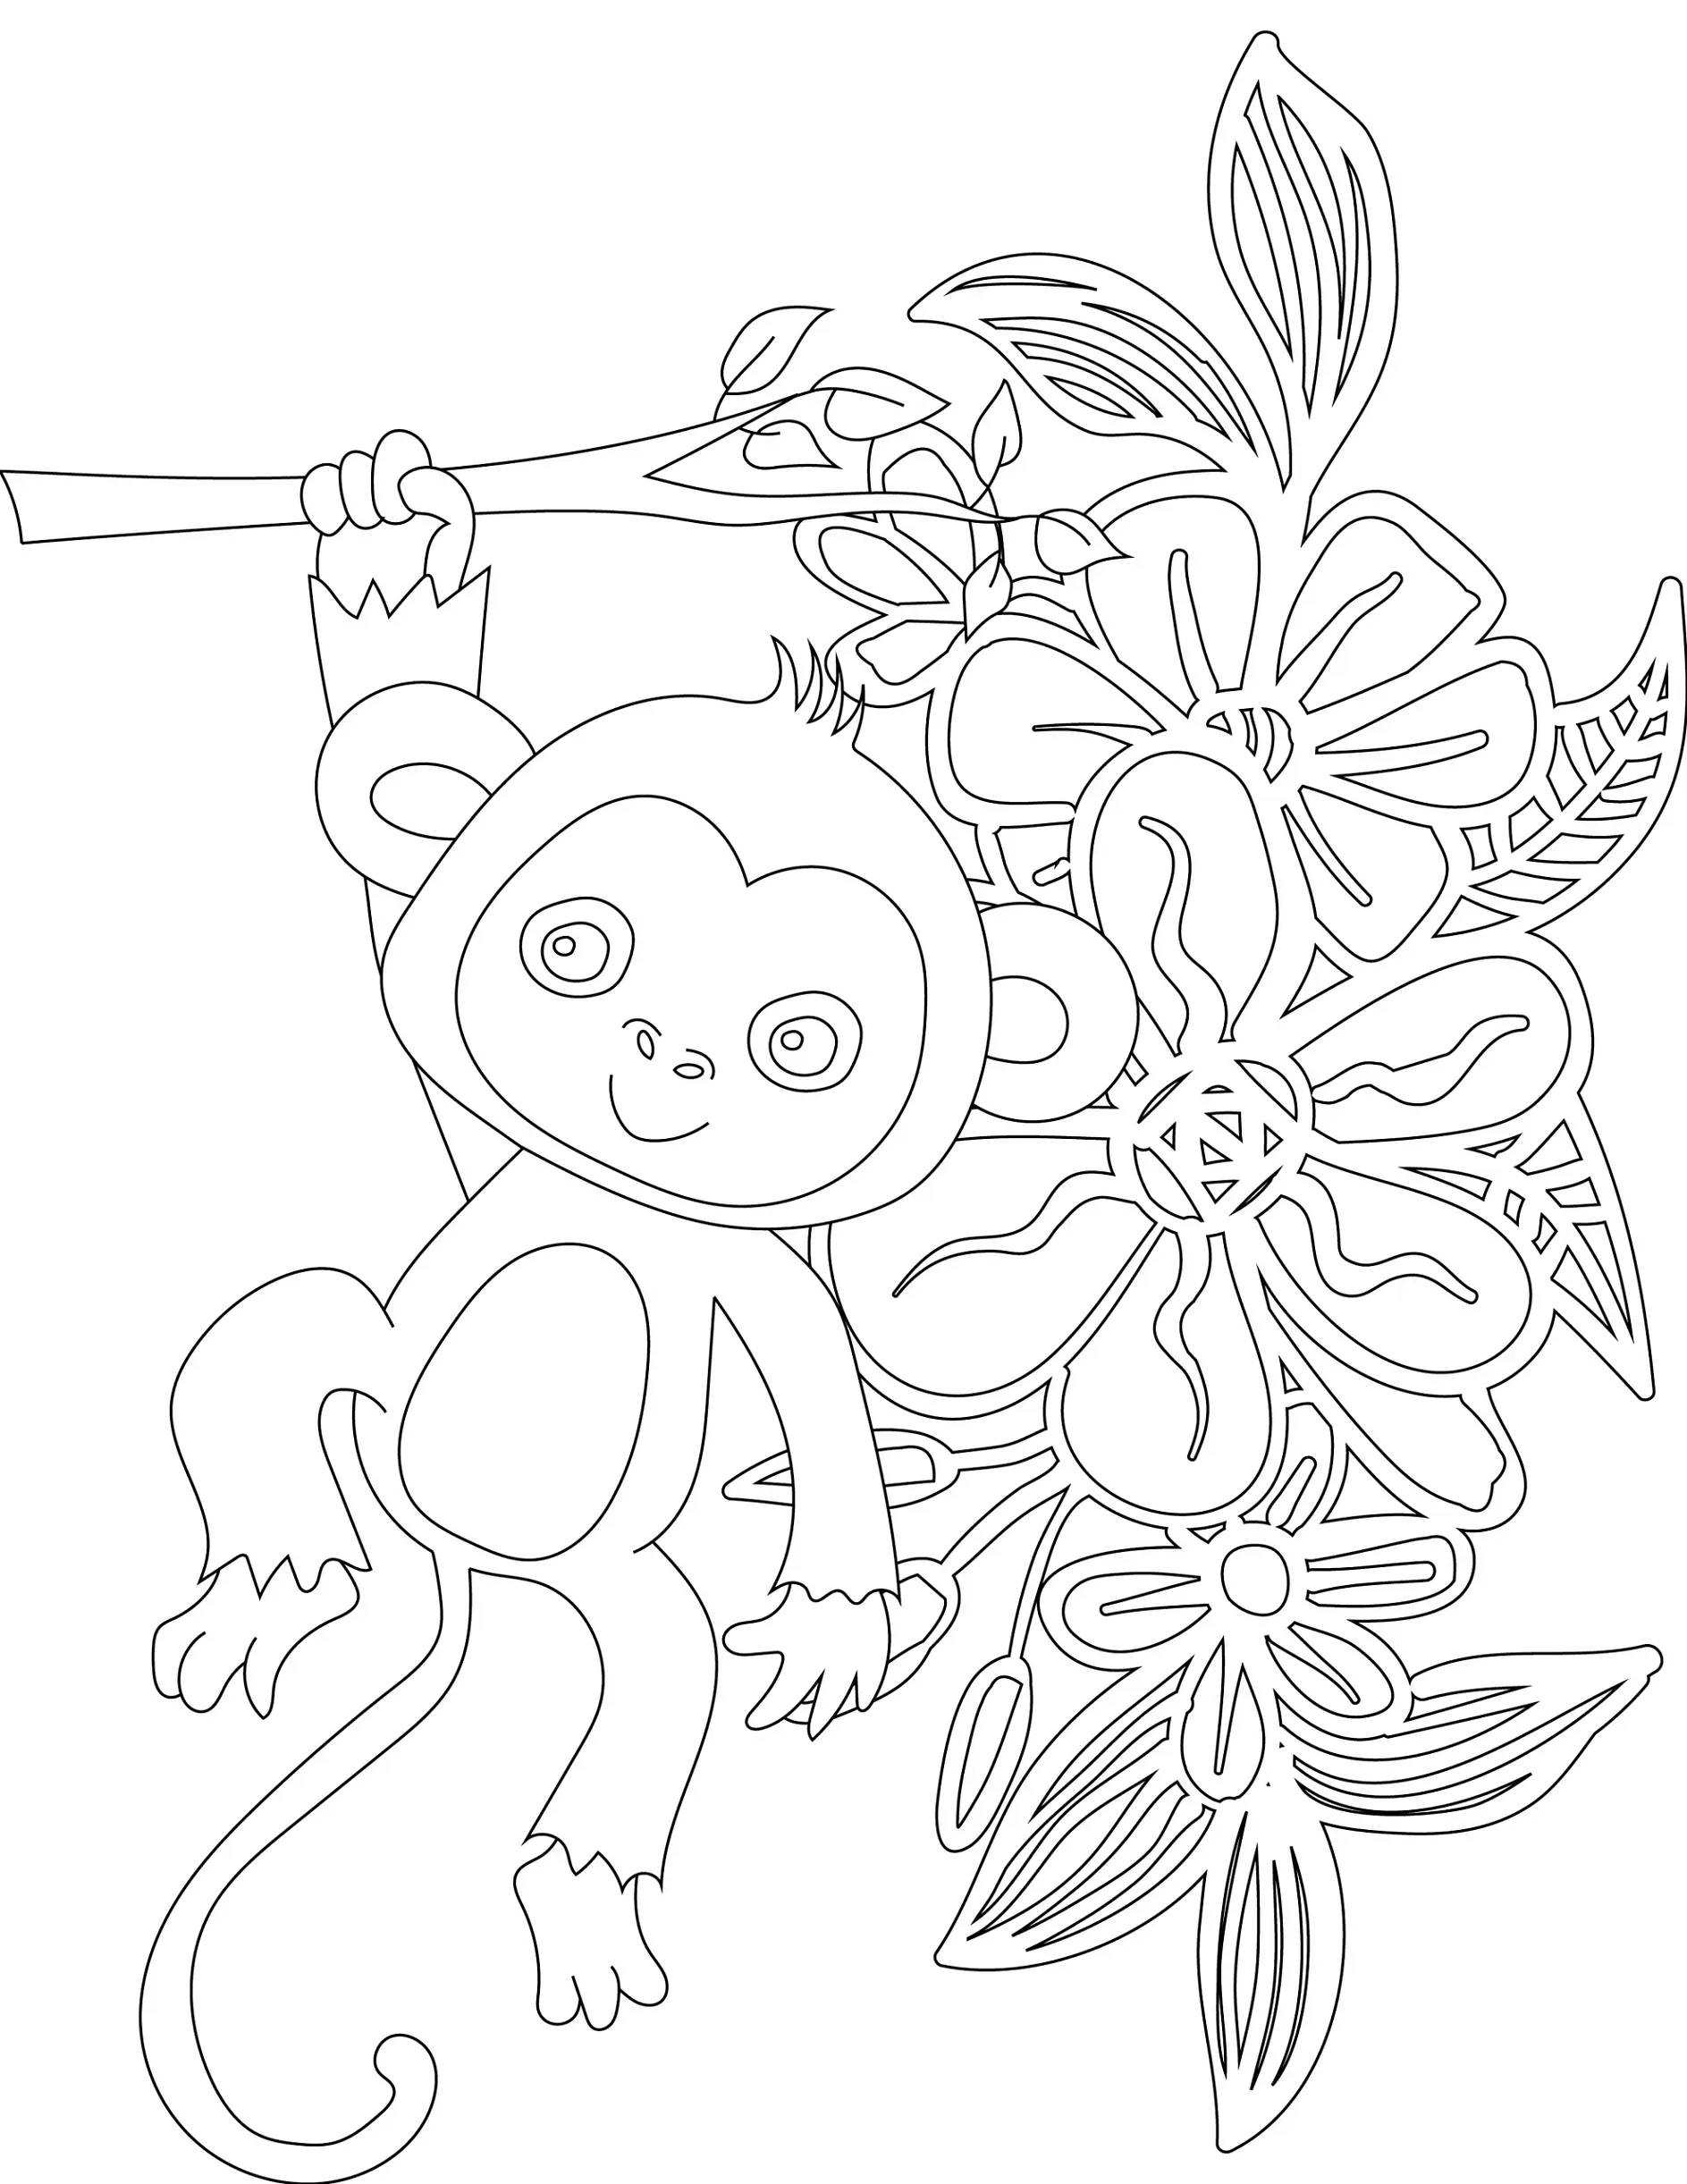 Ausmalbild Affe hängt an einem Ast mit großen Blumen